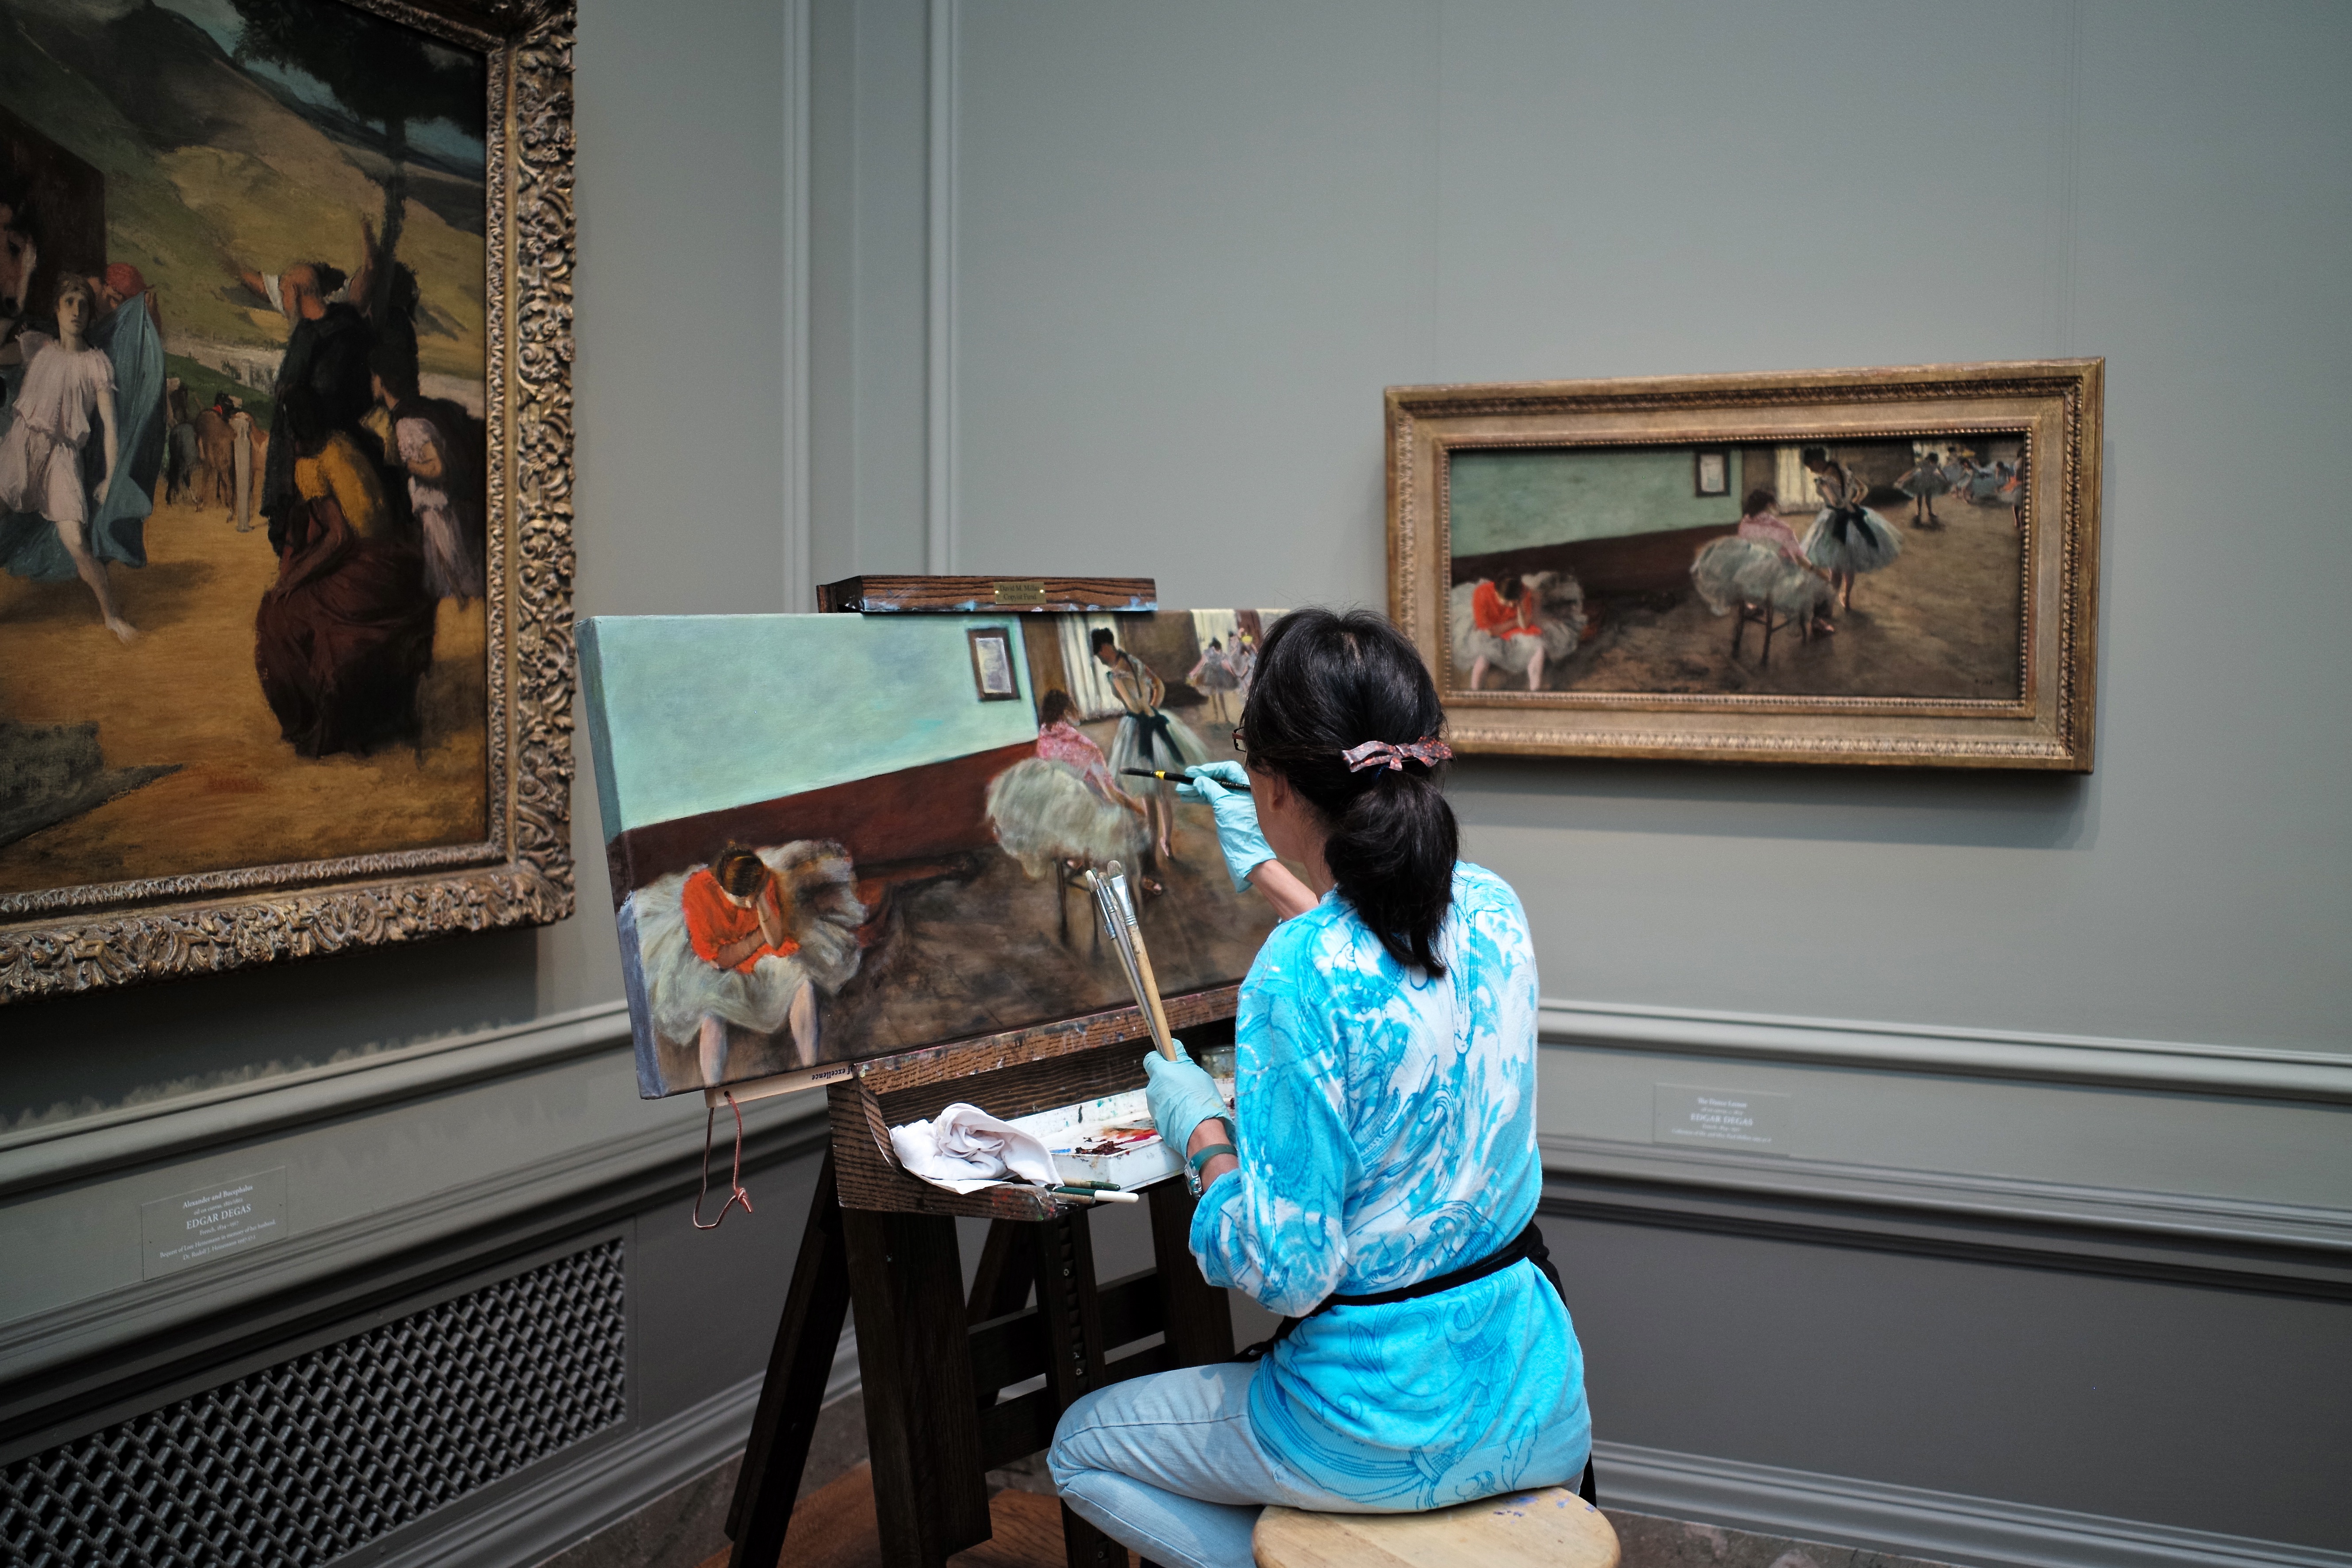 En la imagen aparece una mujer pintando un cuadro igual que otro cuadro que hay en la pared.